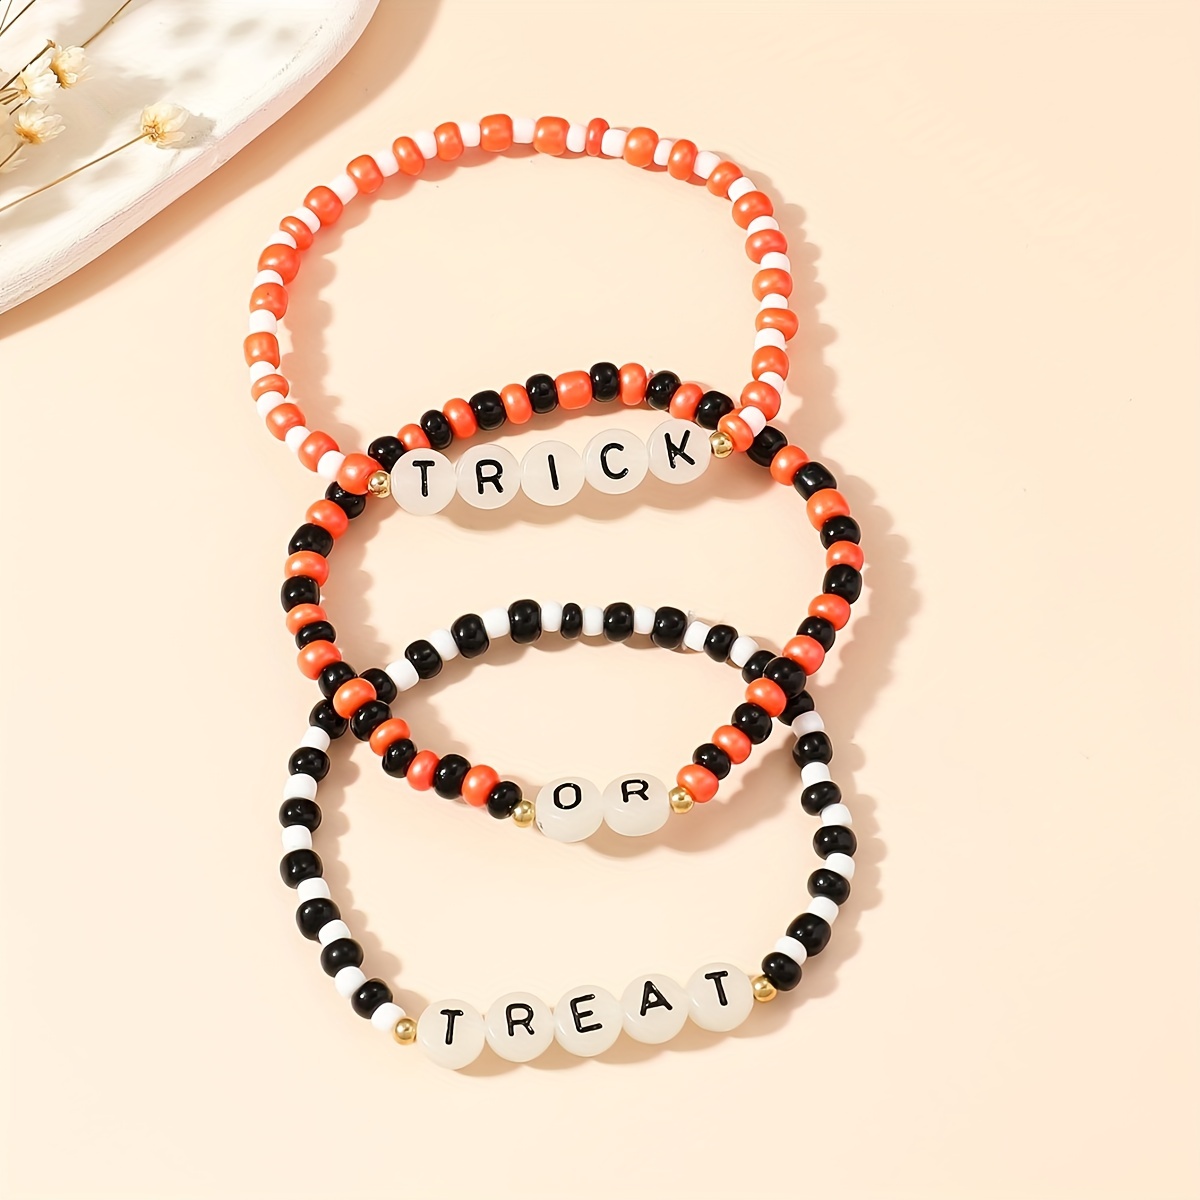  Friendship Bracelet Letter Beads